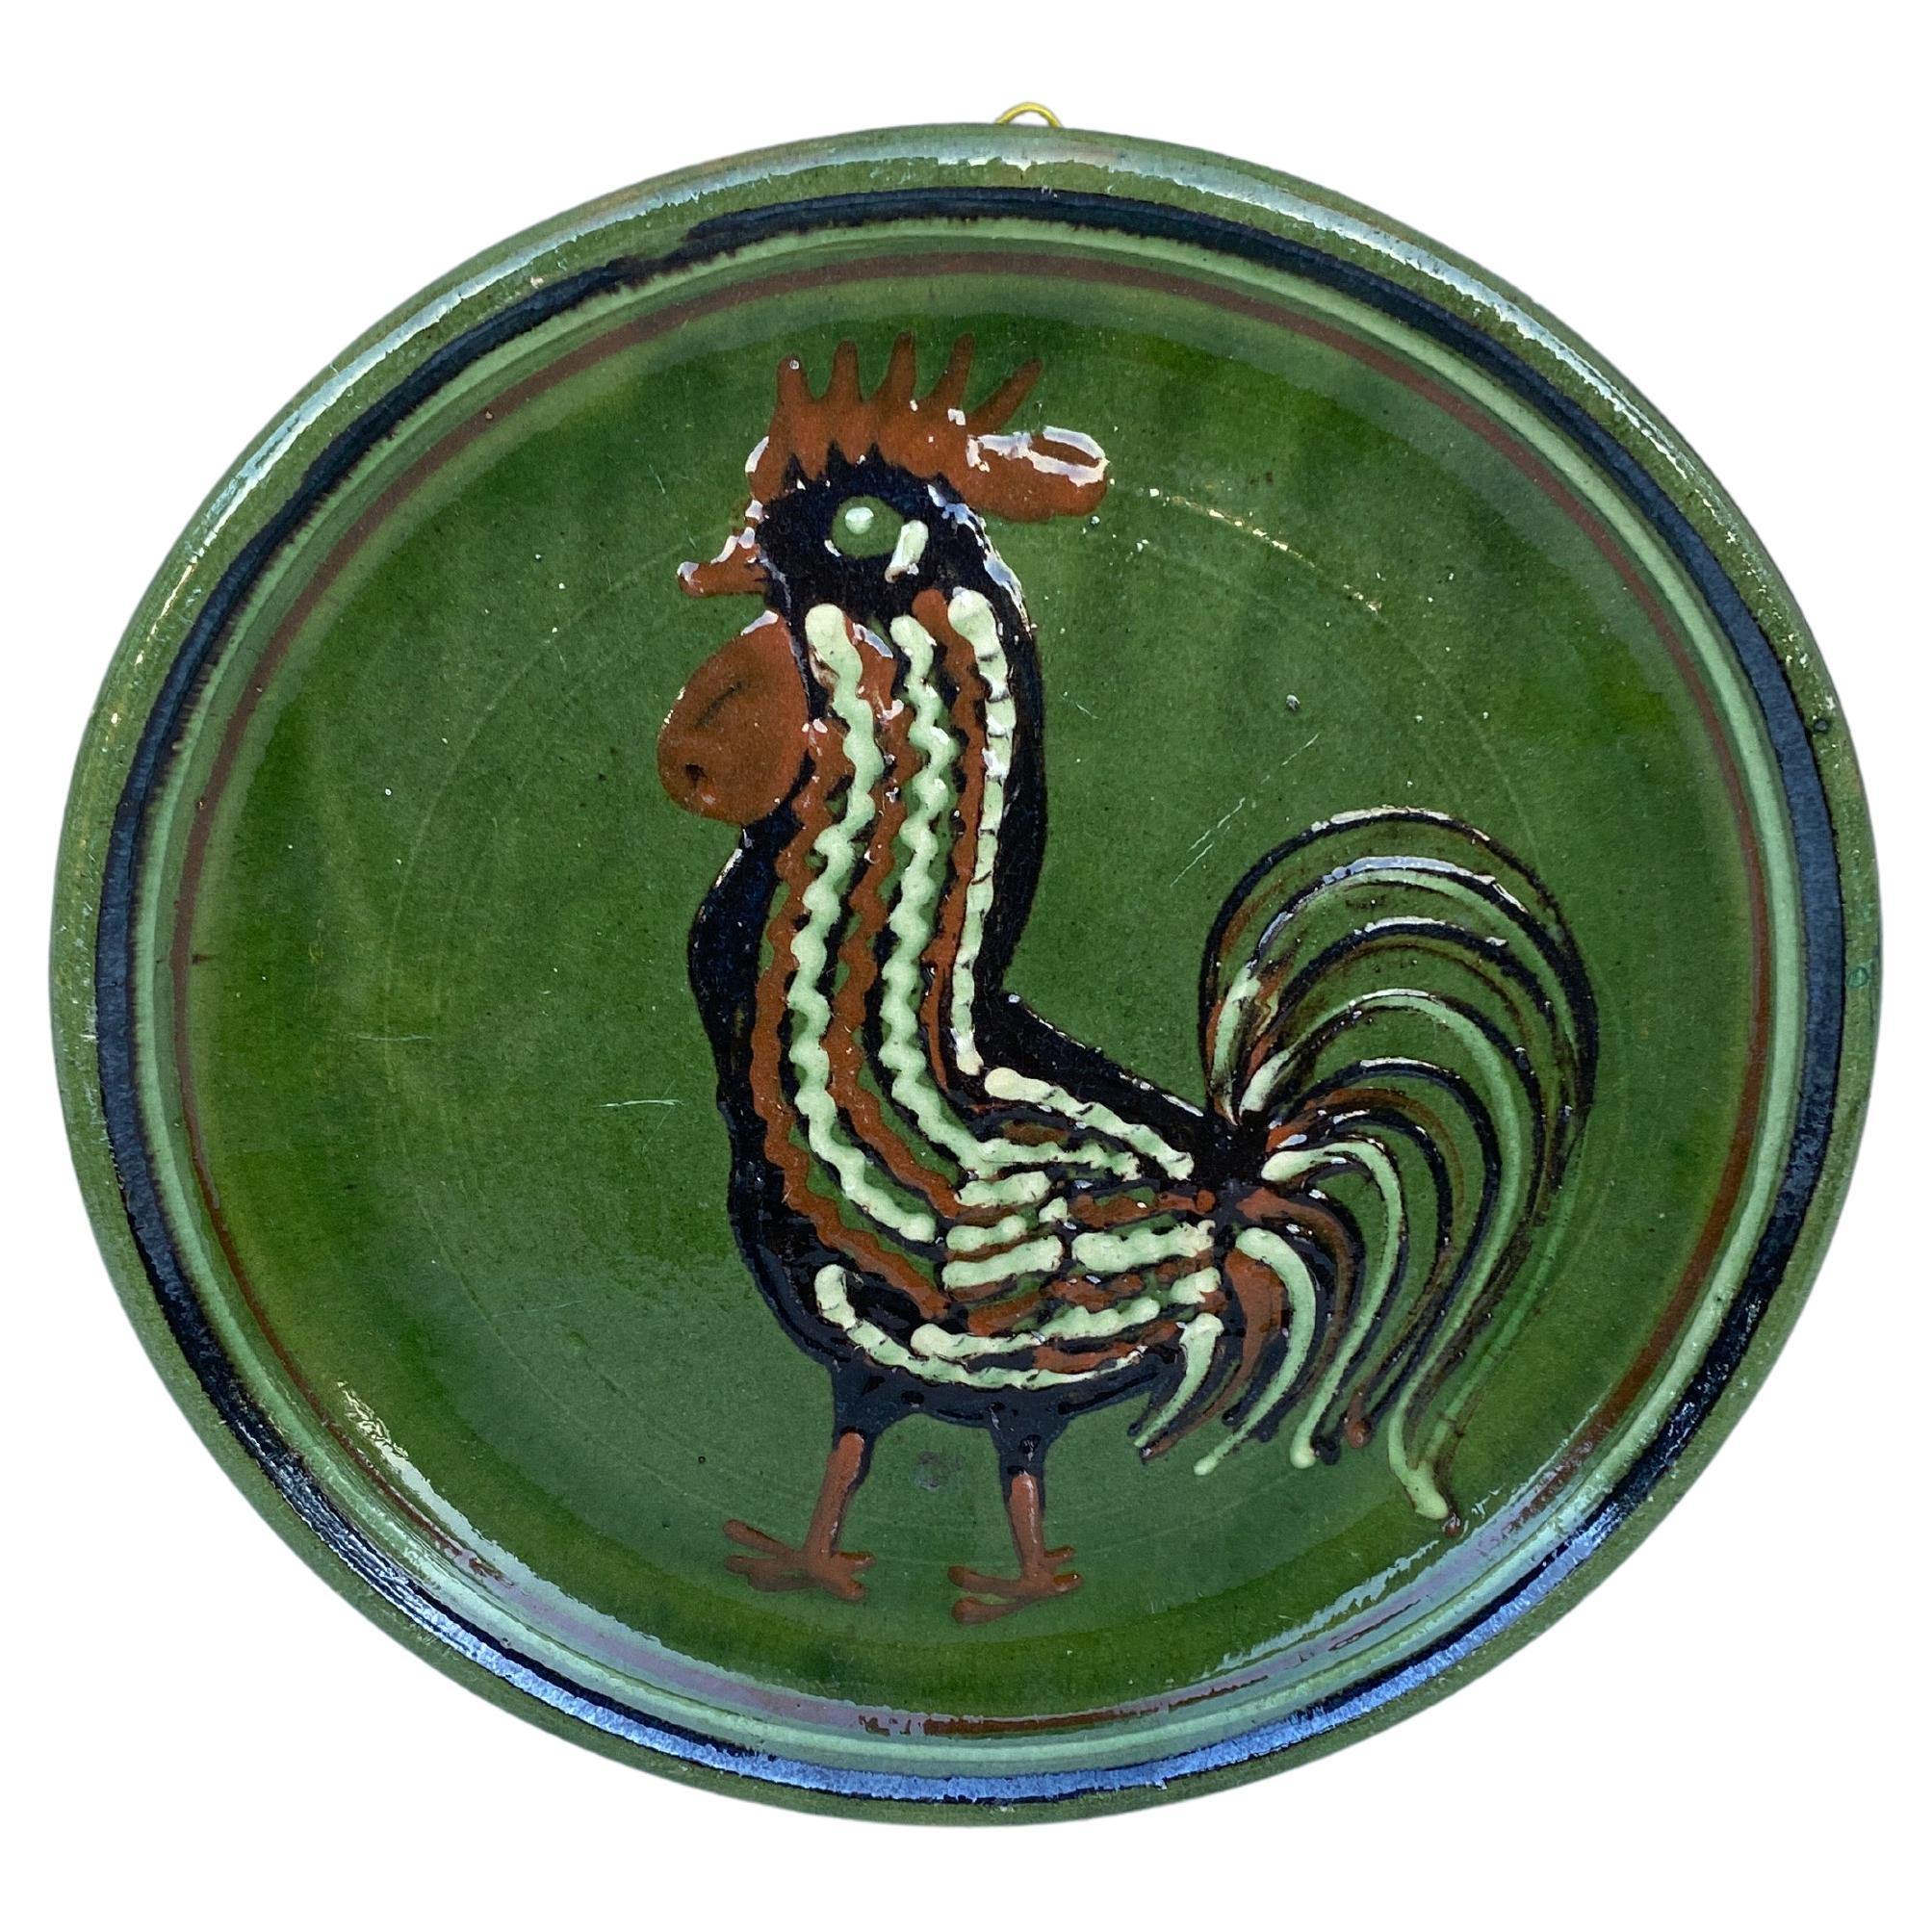 Gran plato de gallo de Savoie de cerámica francesa del siglo XIX